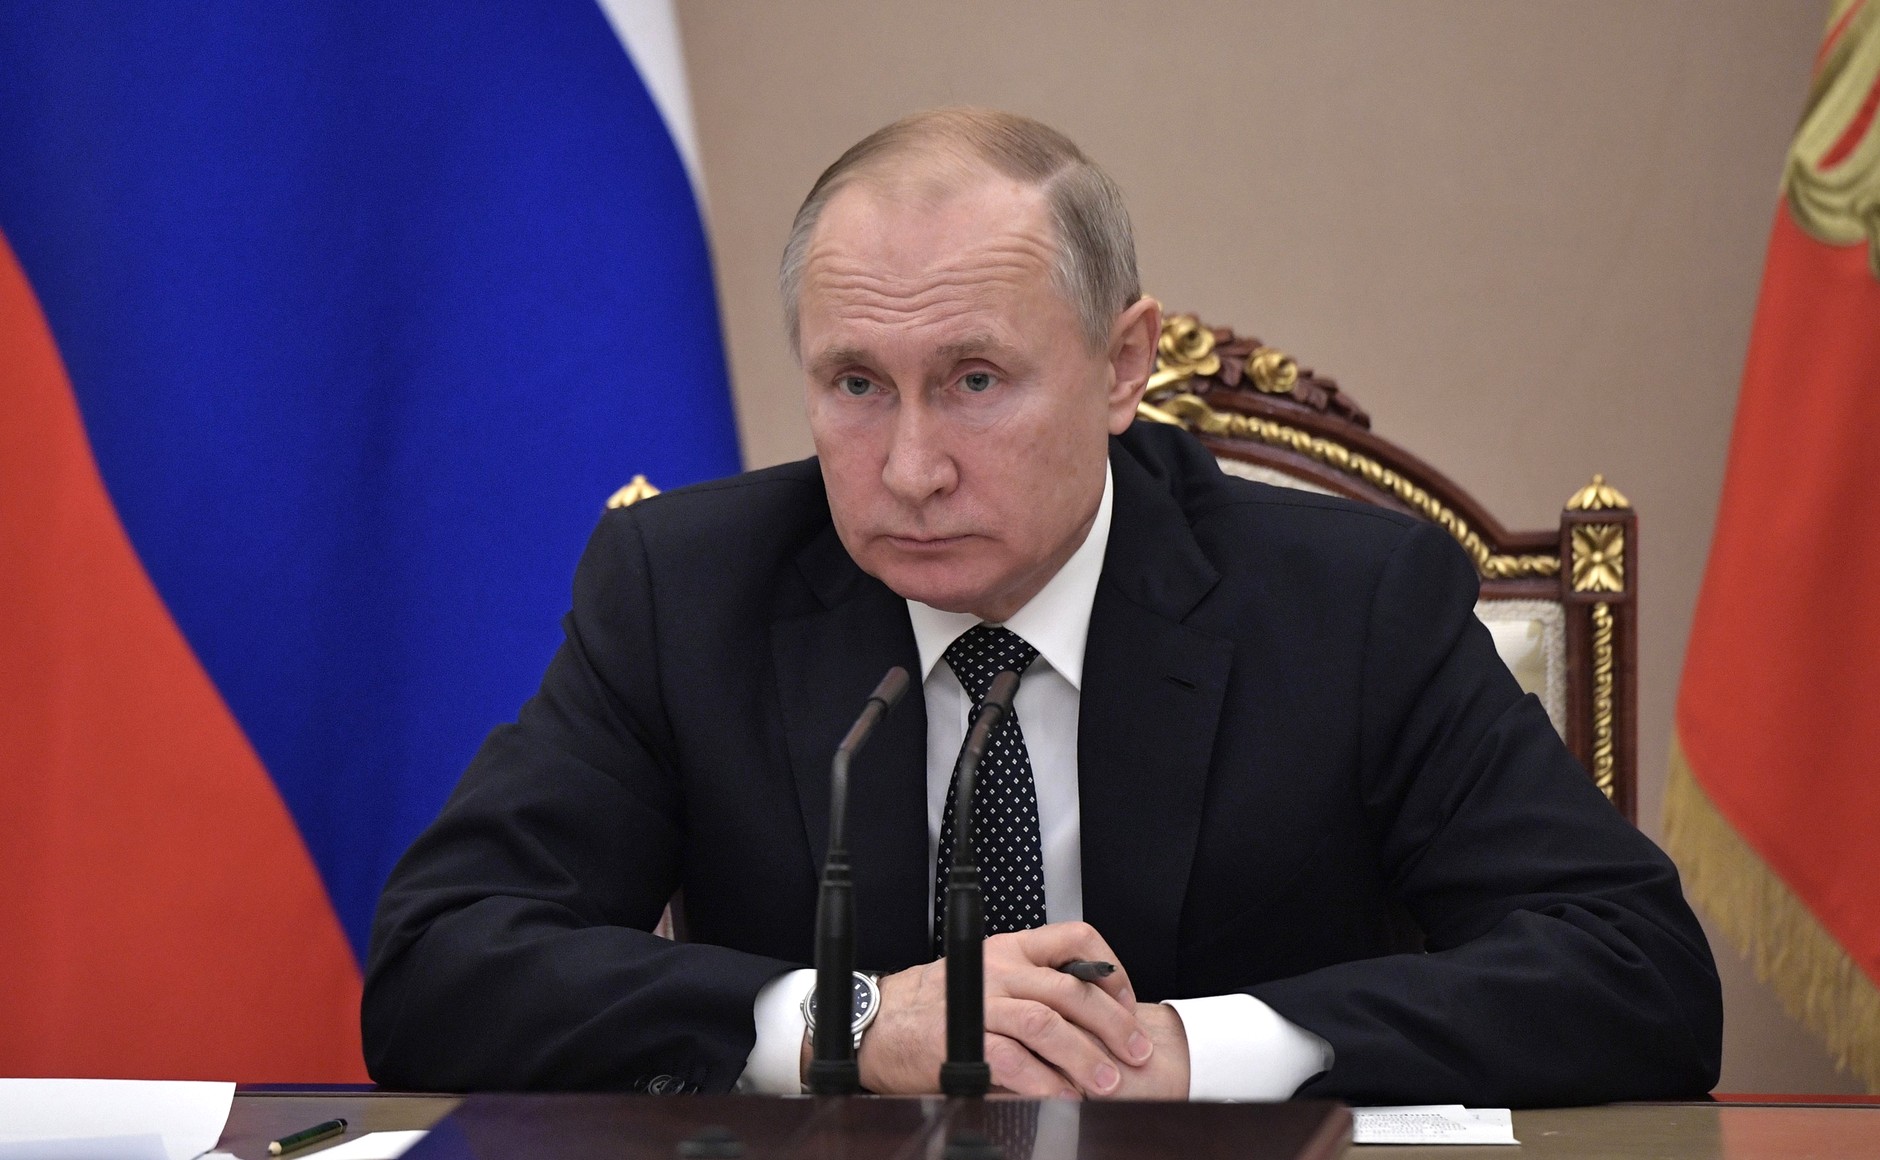 Где и сколько заболевших Коронавирусом в России на сегодня, последние новости на 28 апреля 2020: Путин будет продлевать карантин до 11 мая